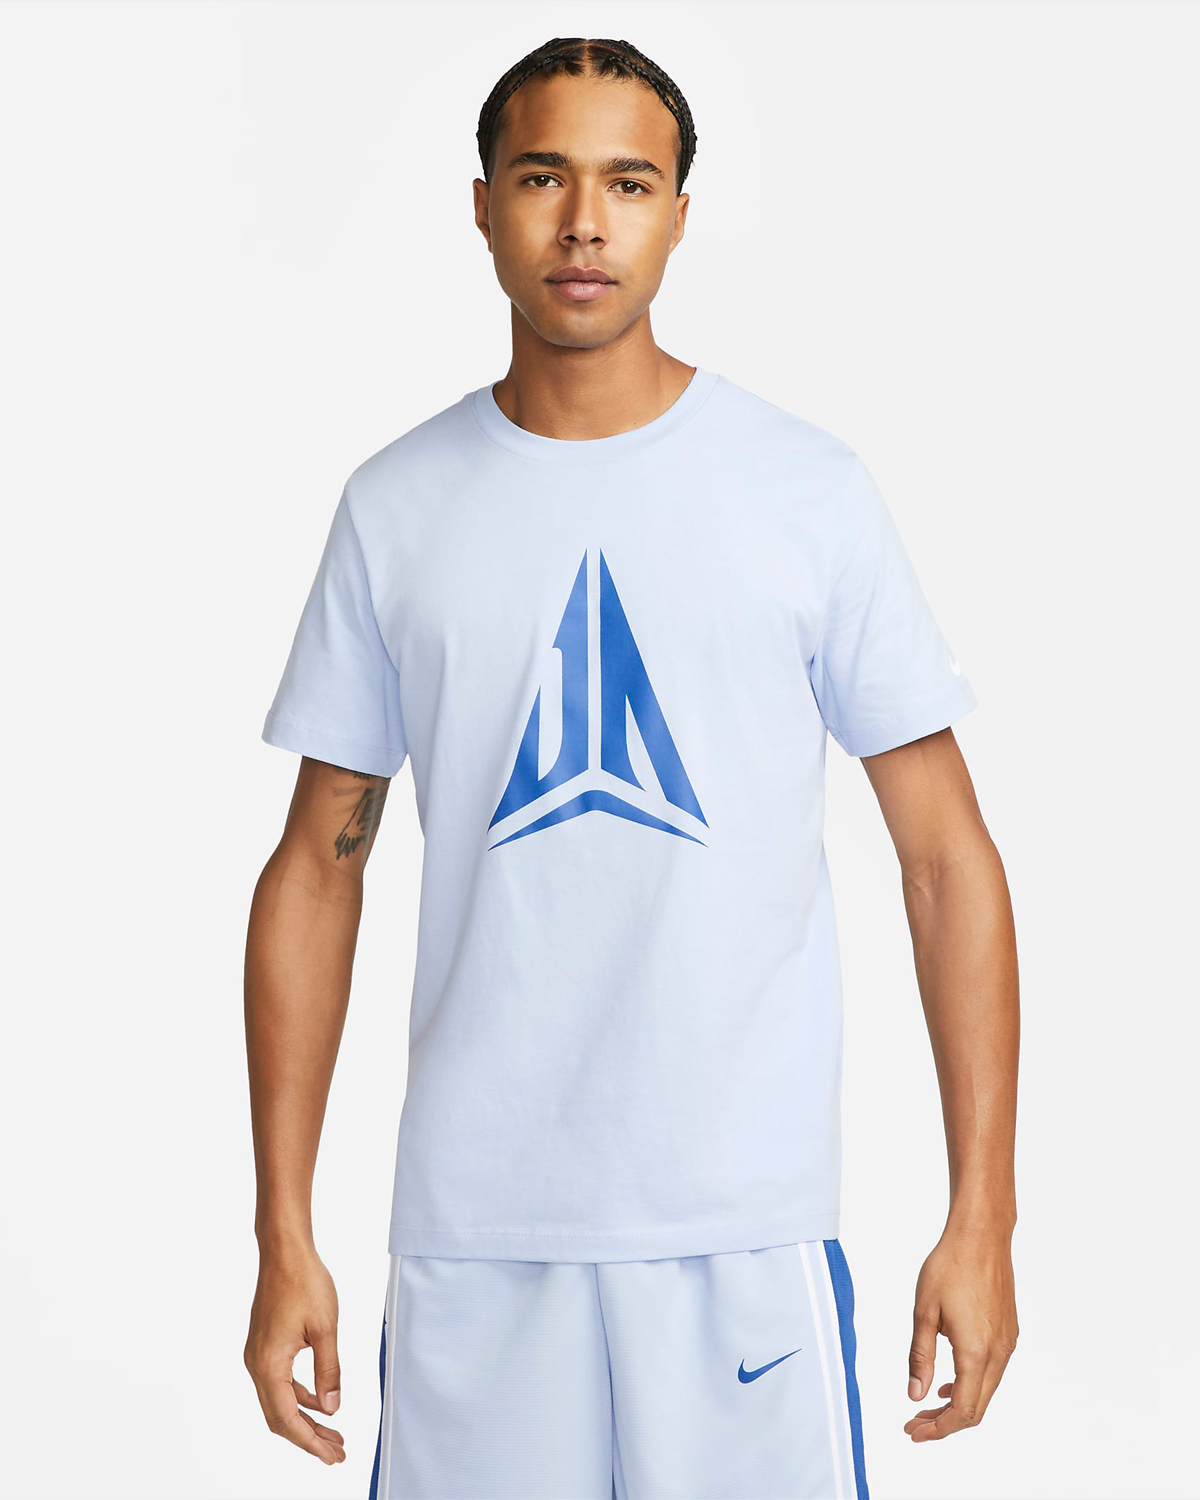 Nike-Ja-1-Day-1-Shirt-Cobalt-Bliss